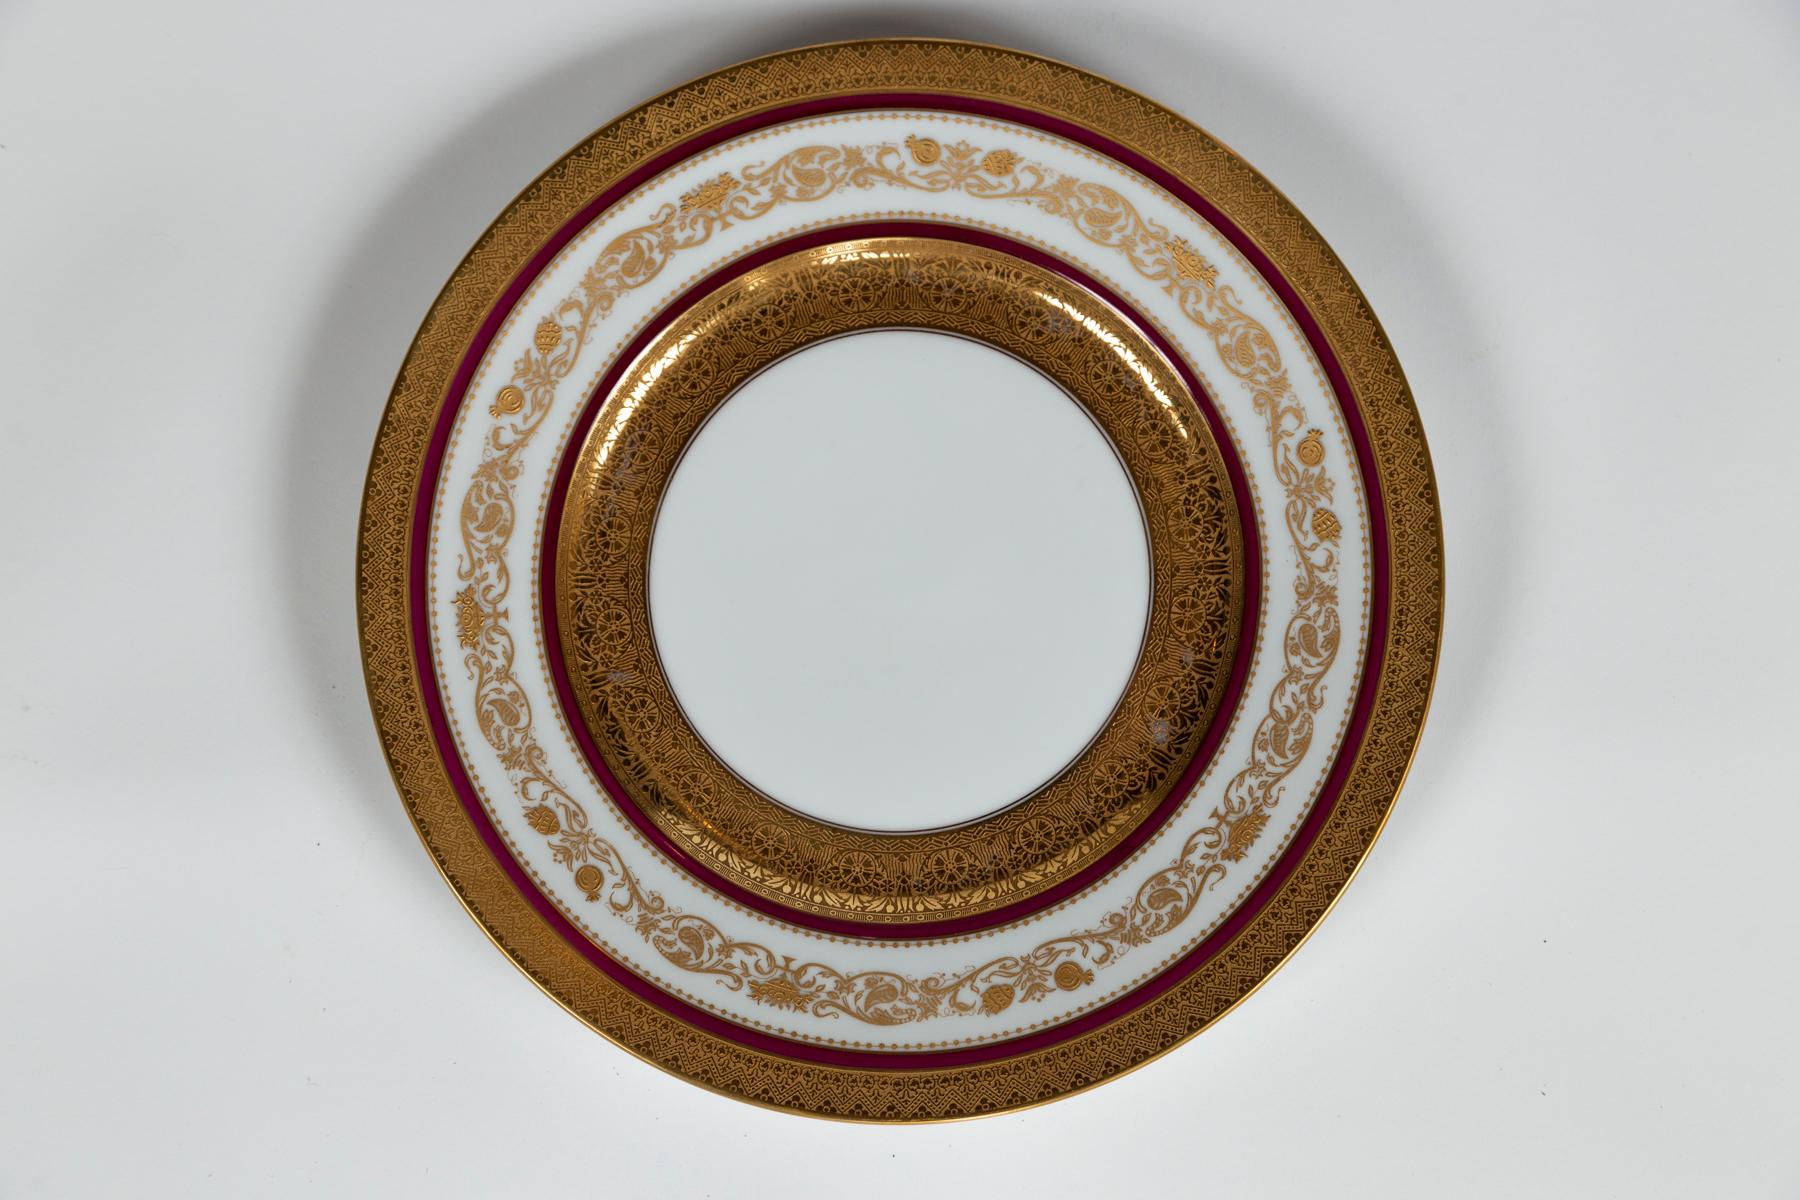 Assiettes plates anciennes Hutschenreuther, début du 20e siècle, Bavière. Un magnifique ensemble de 10 assiettes à dîner. Dorure en relief avec des bandes de couleur rouge foncé. Marqué 